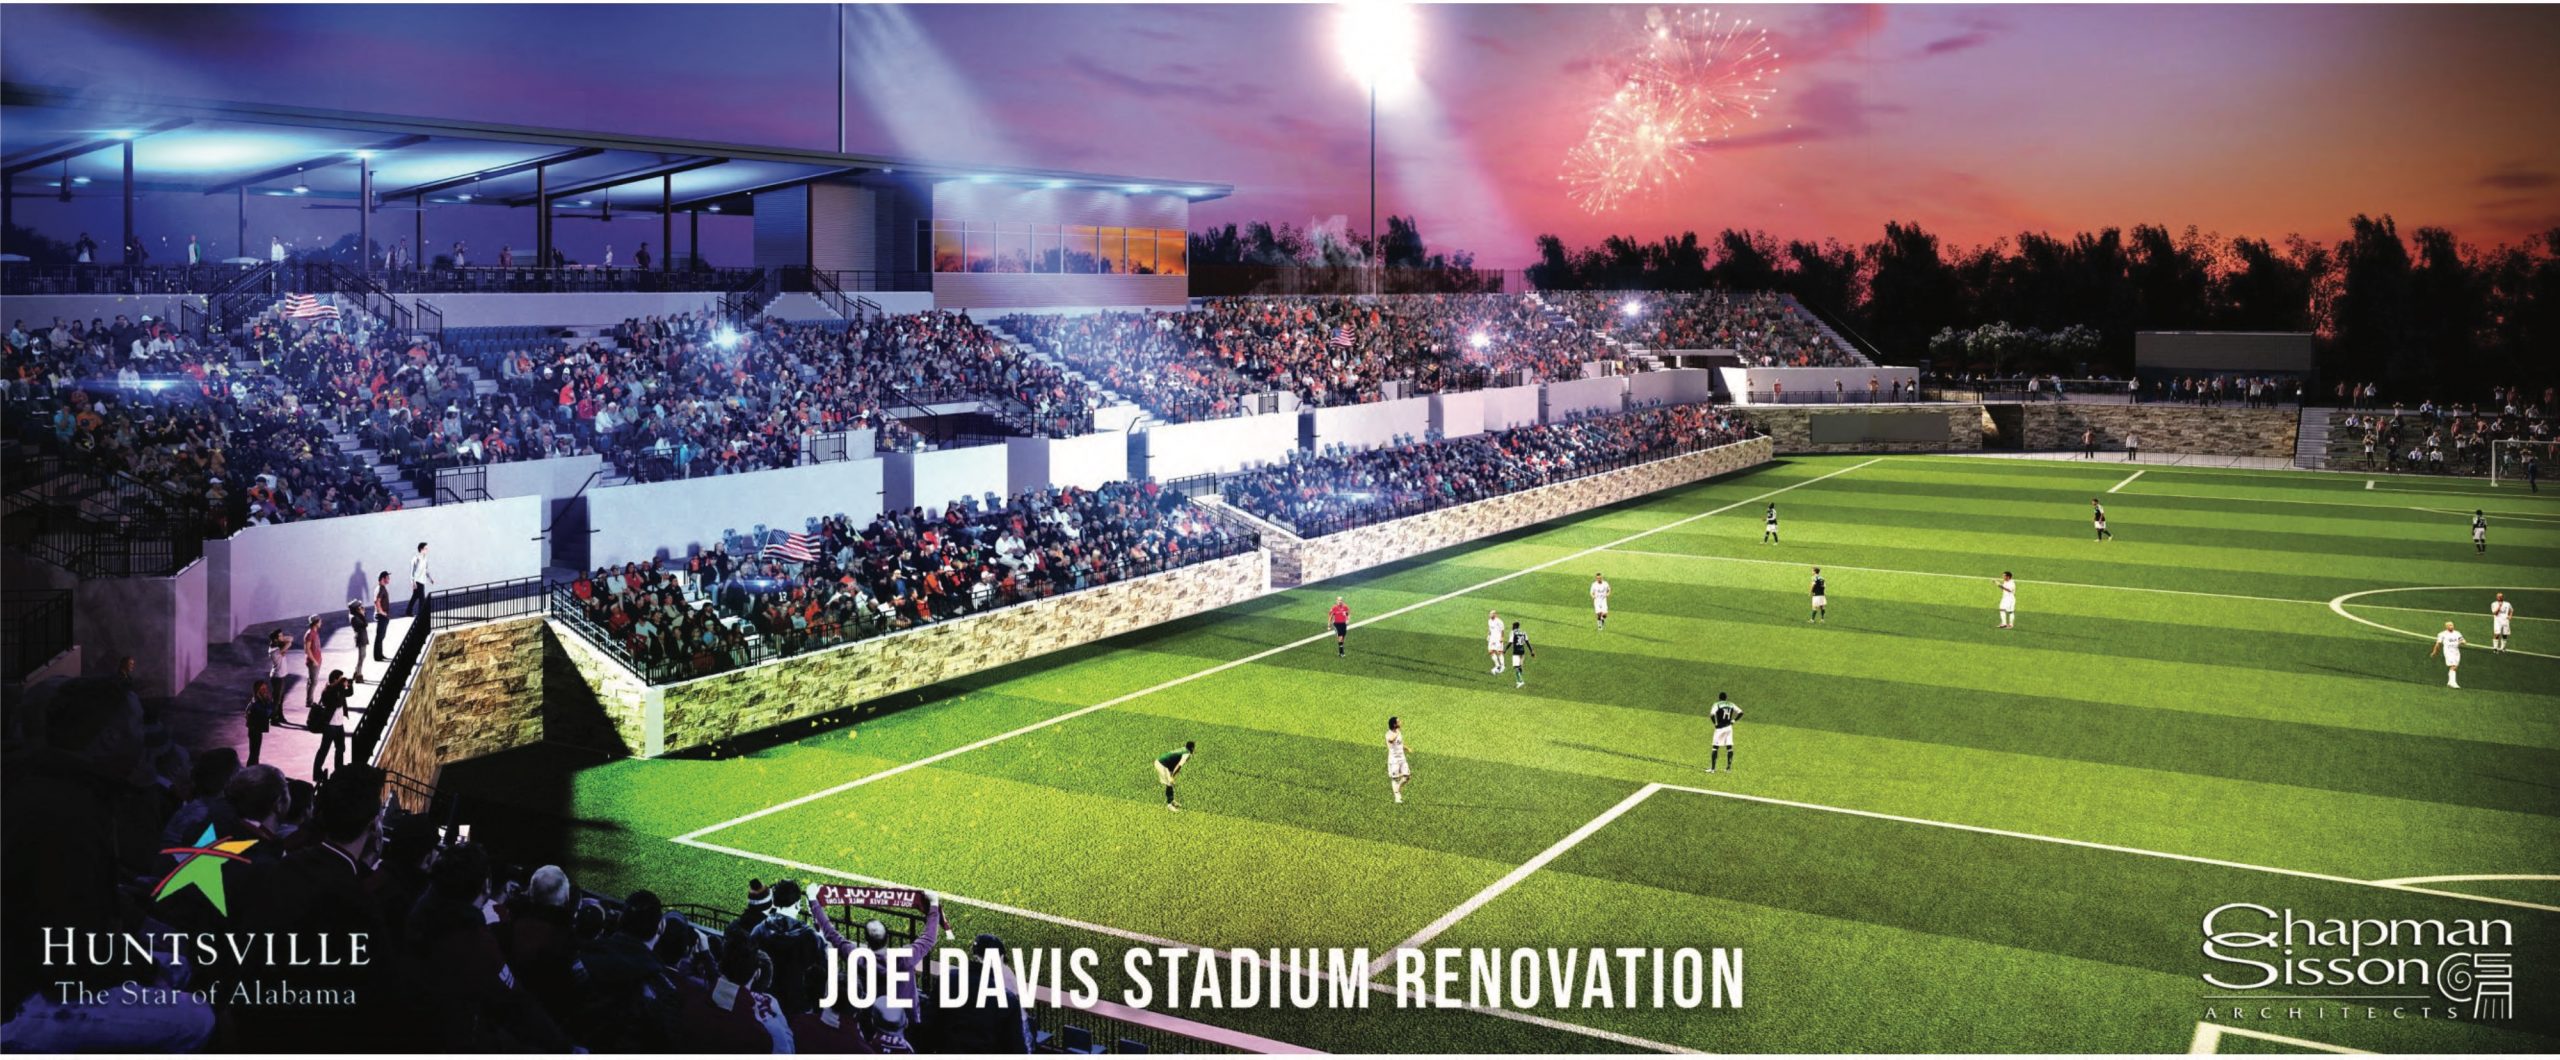 Rendering of Joe Davis renovation field